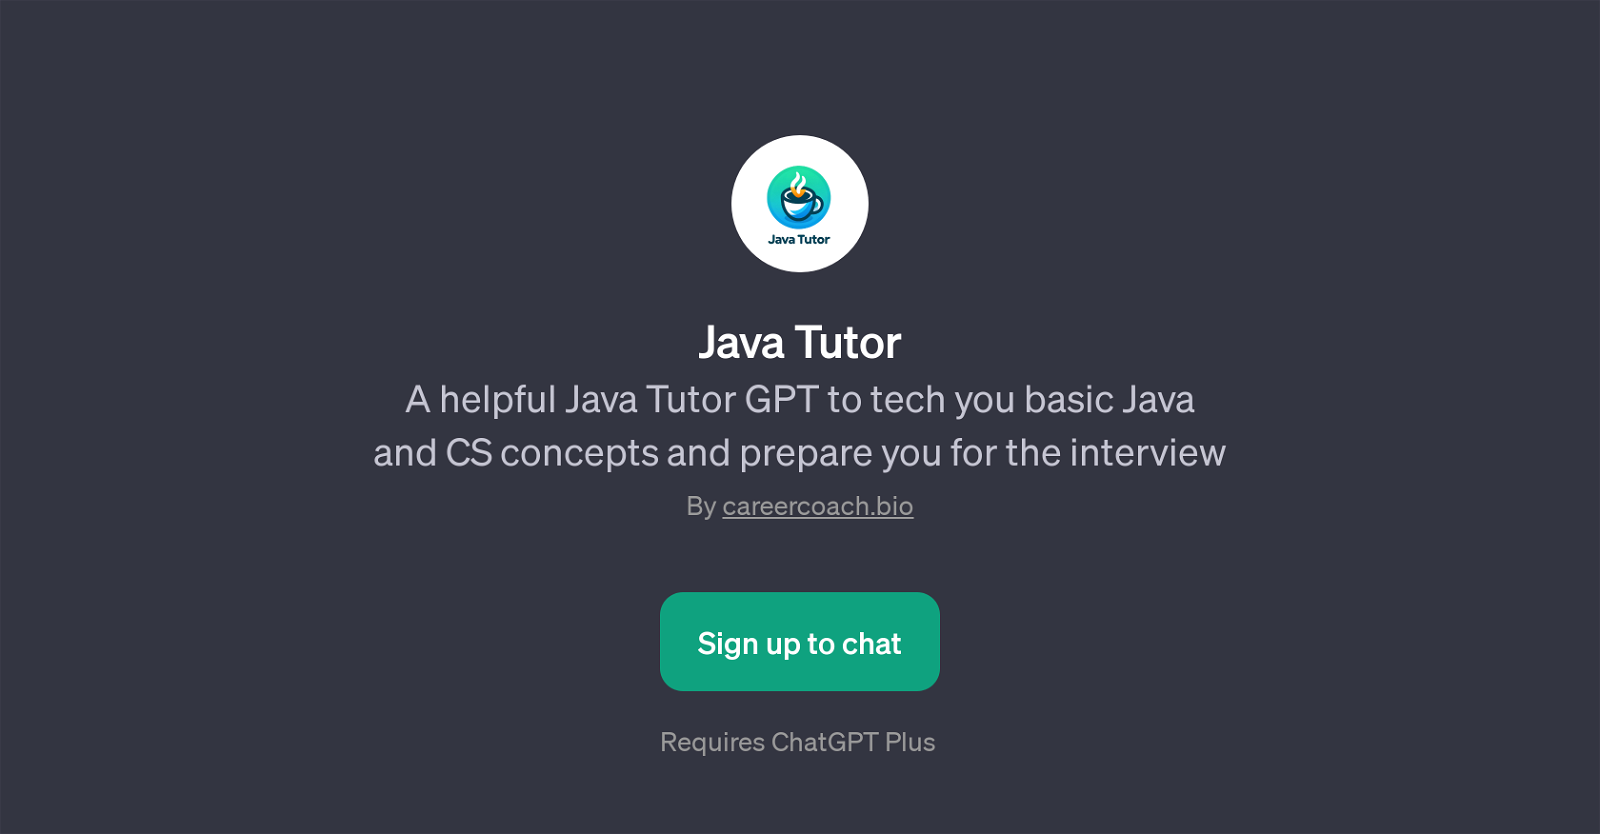 Java Tutor website